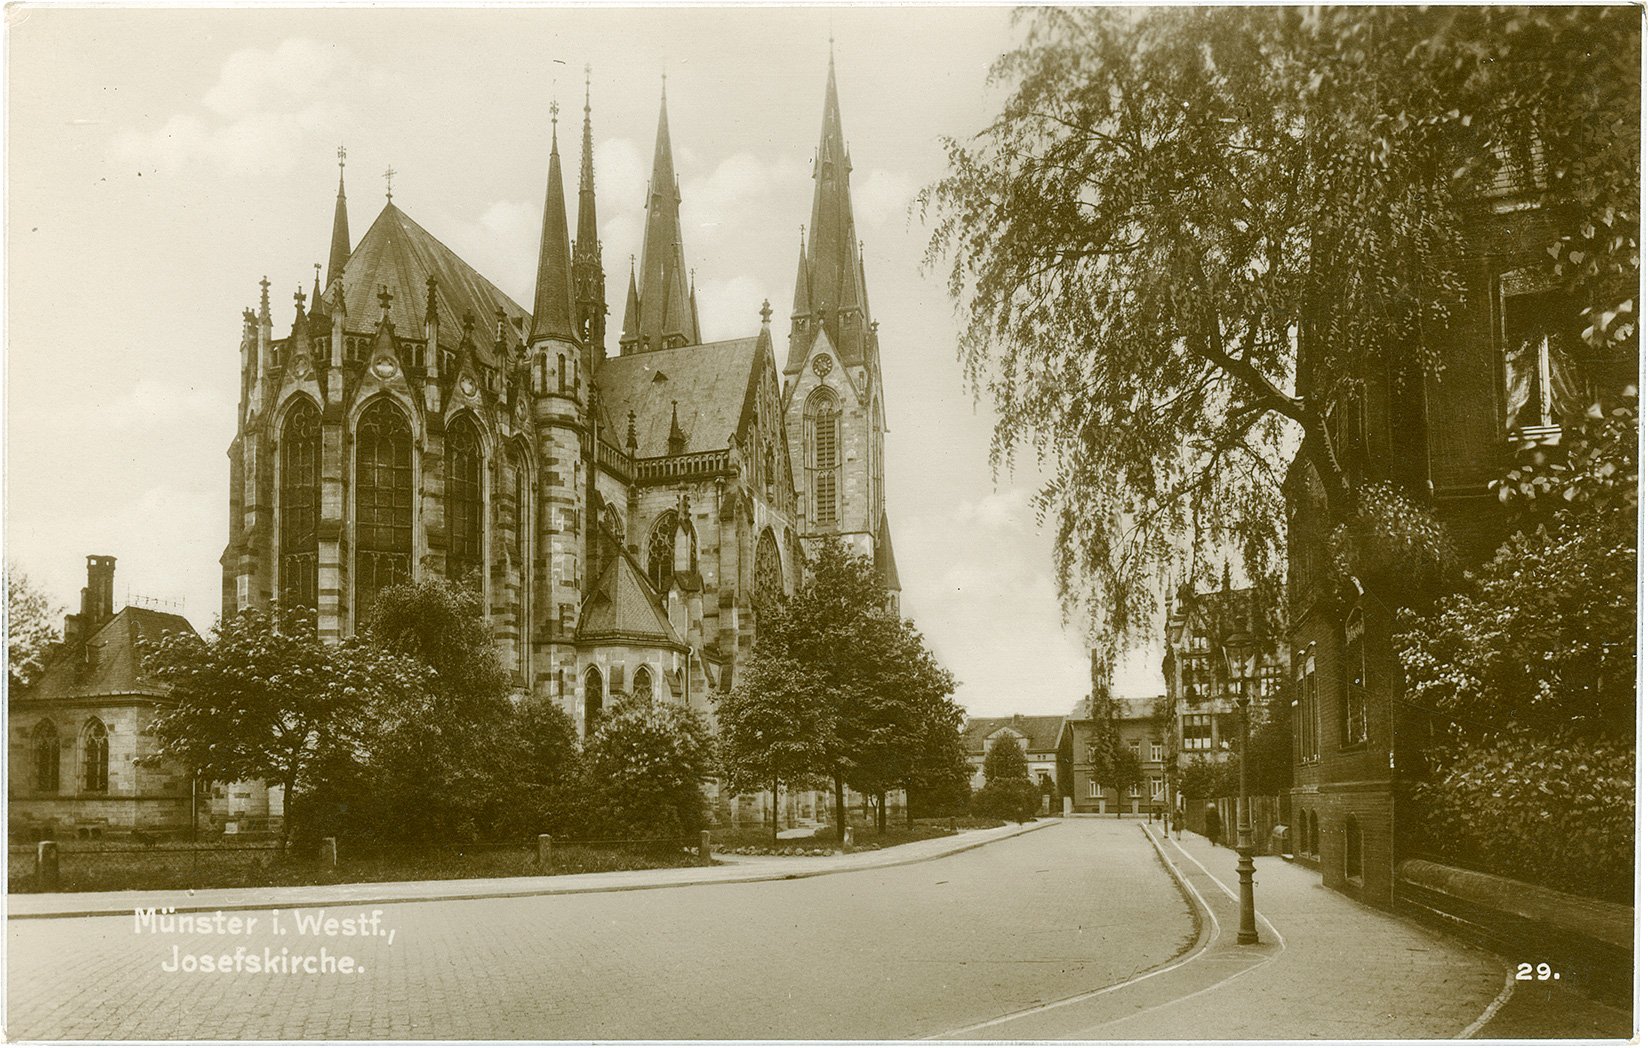 Postkarte: Blick auf den Chor und die Sakristei der Josephskirche von der Kronprinzenstraße in Richtung Hammer Straße. (Stadtmuseum Münster CC BY-NC-SA)